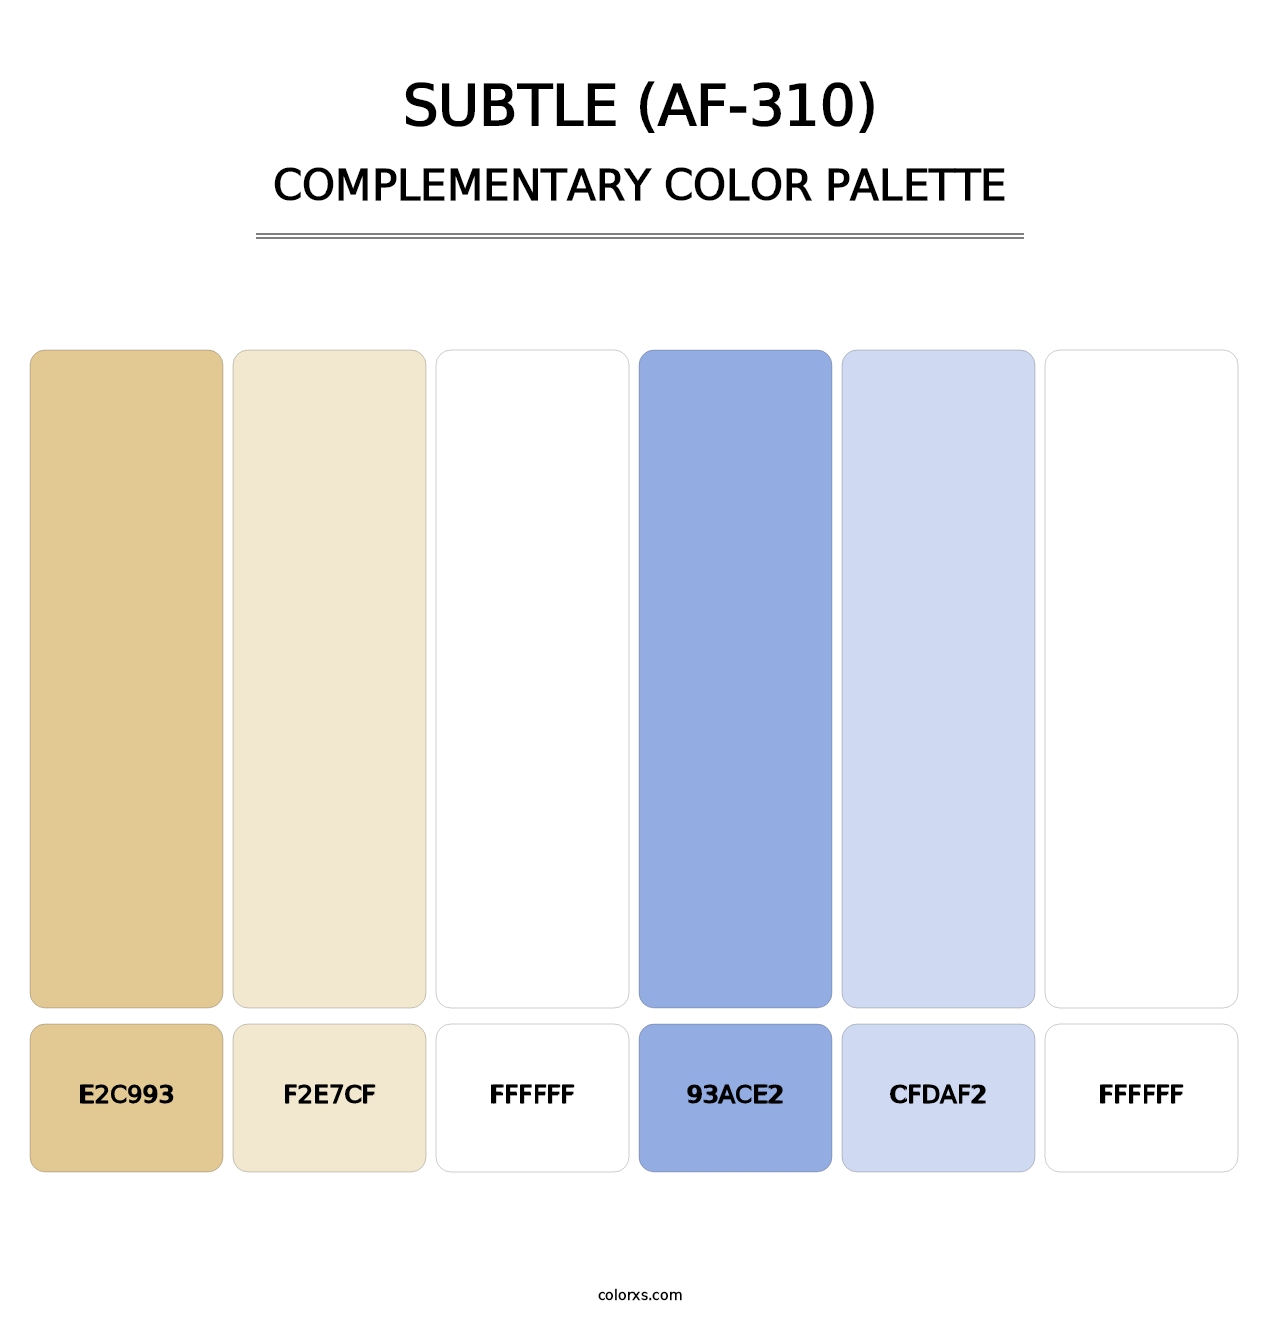 Subtle (AF-310) - Complementary Color Palette